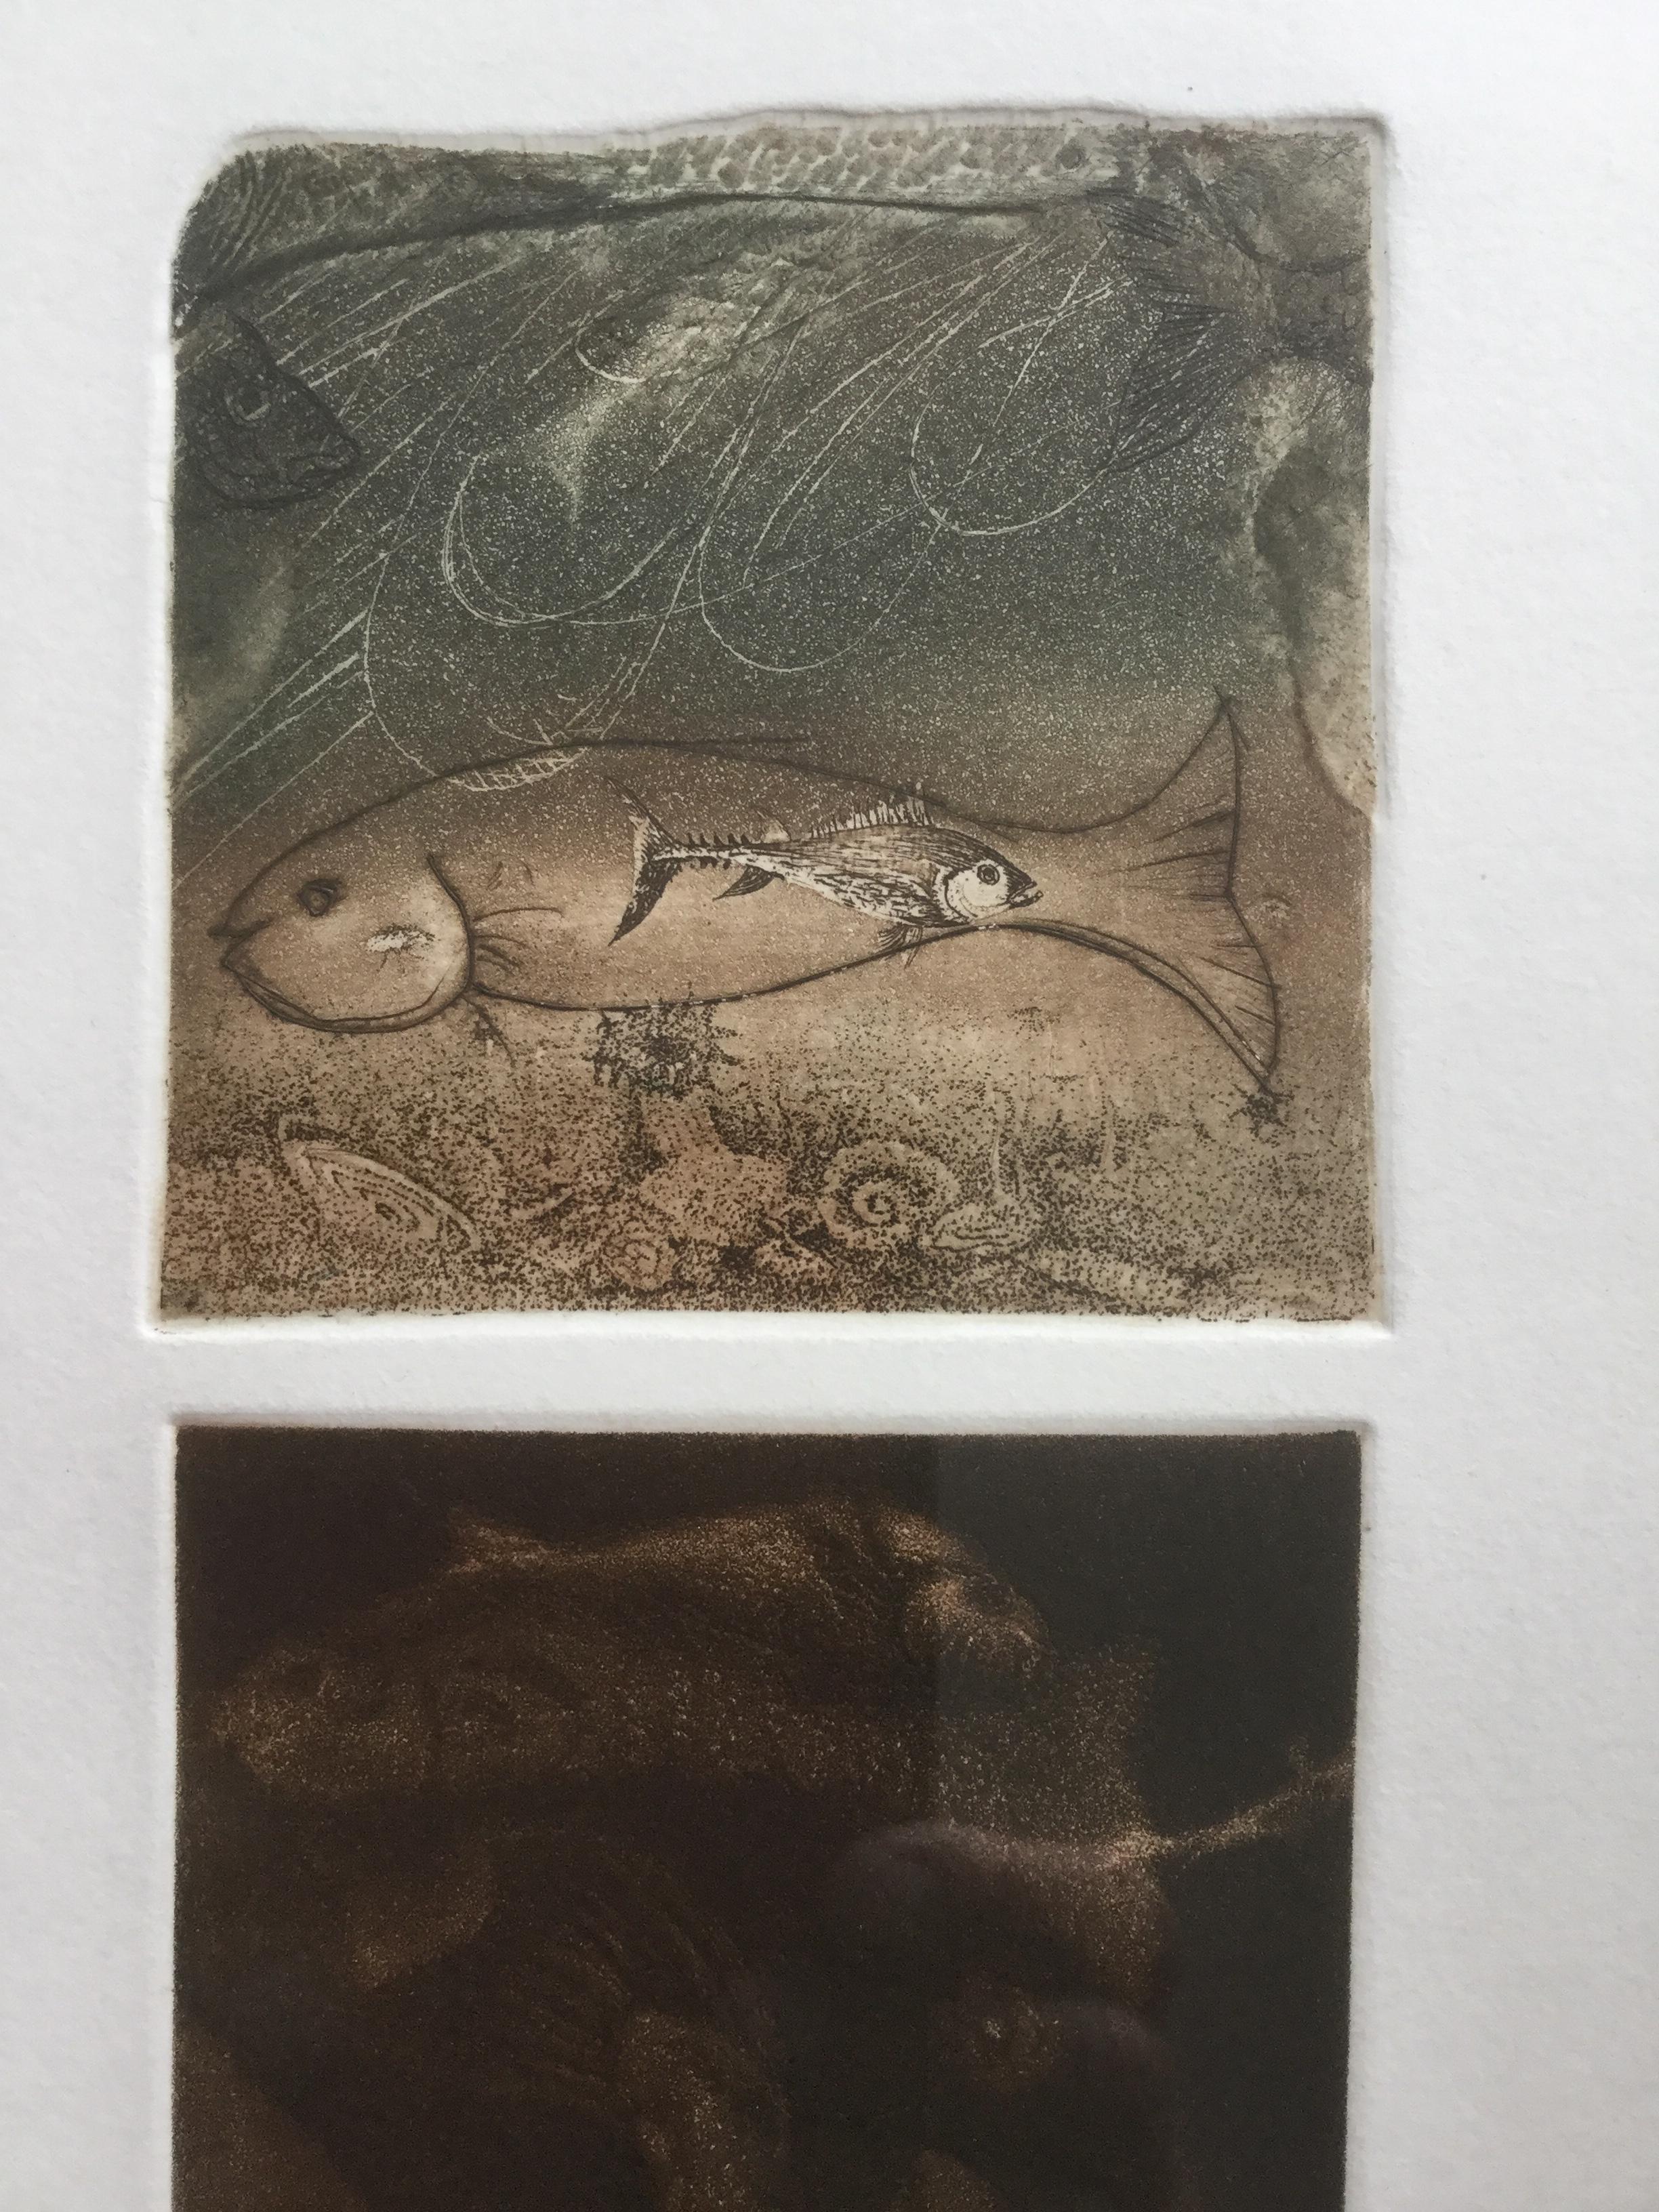 Fish Triptychon - XX Jahrhundert, figurative Radierung Aquatinta Druck, kleine Auflage 7/X (Zeitgenössisch), Print, von Andrzej Juchniewicz